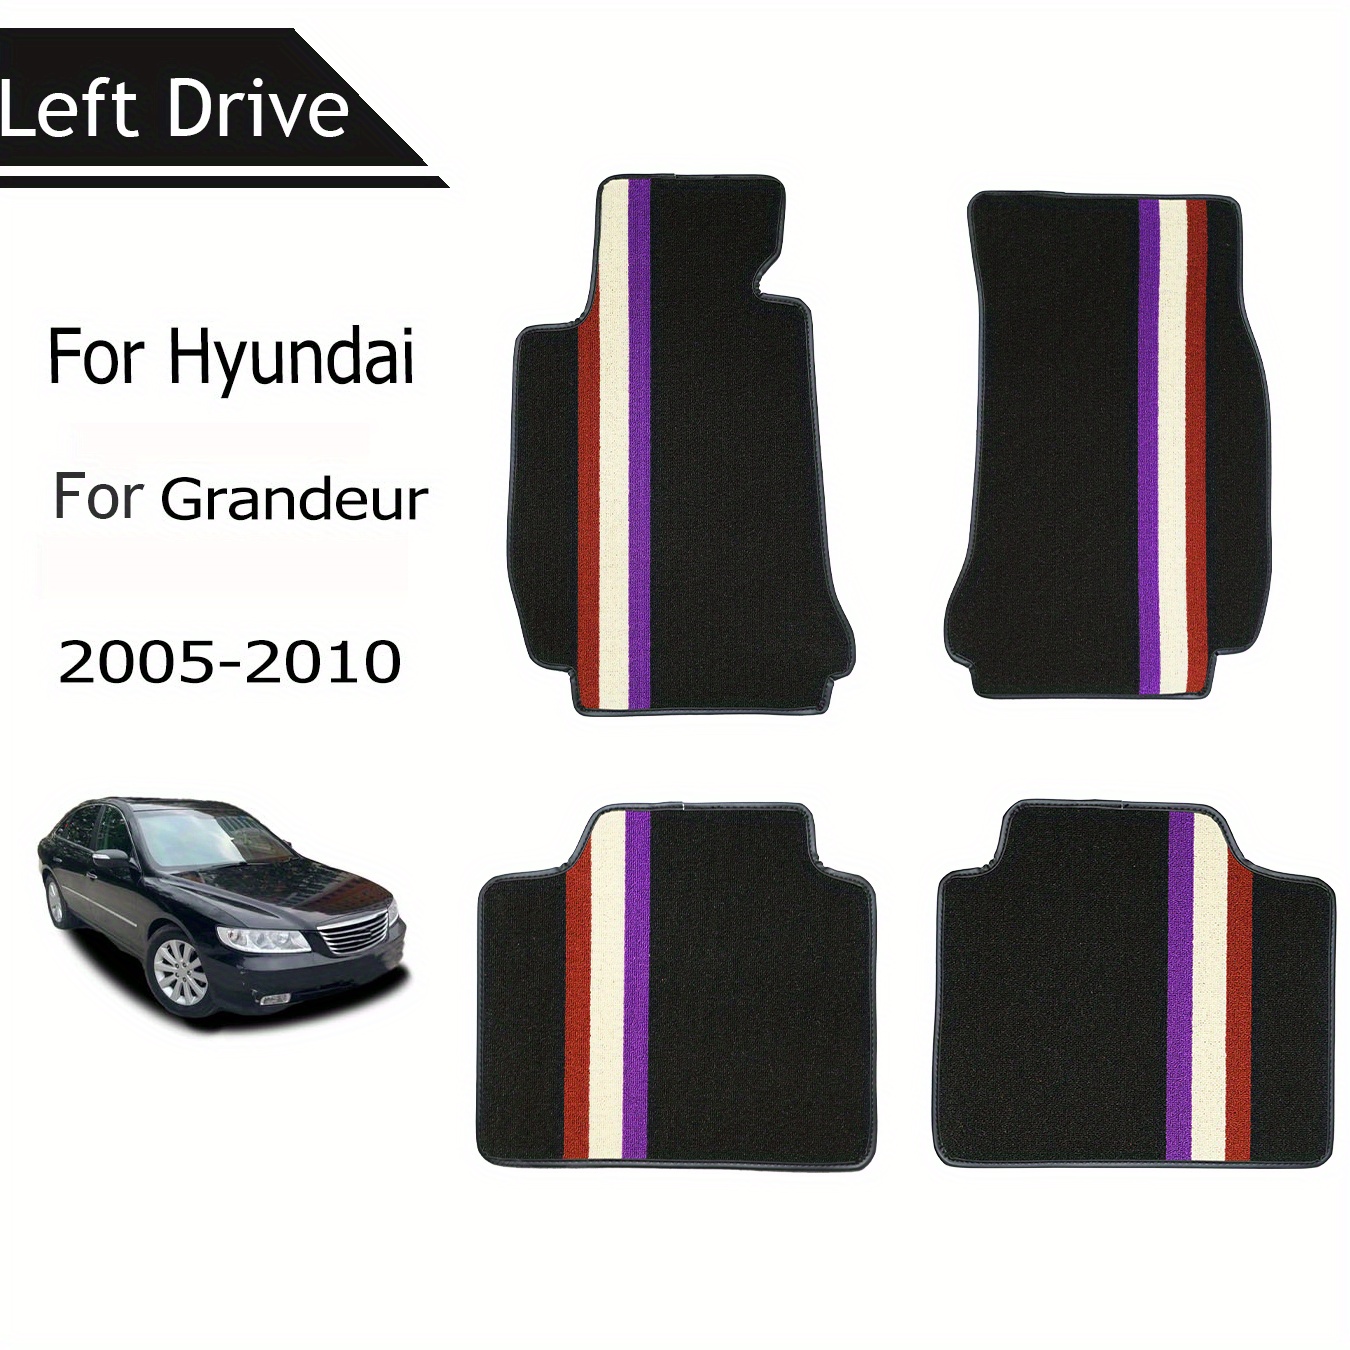 Tapis de sol de voiture en cuir sur mesure pour Hyundai, tapis